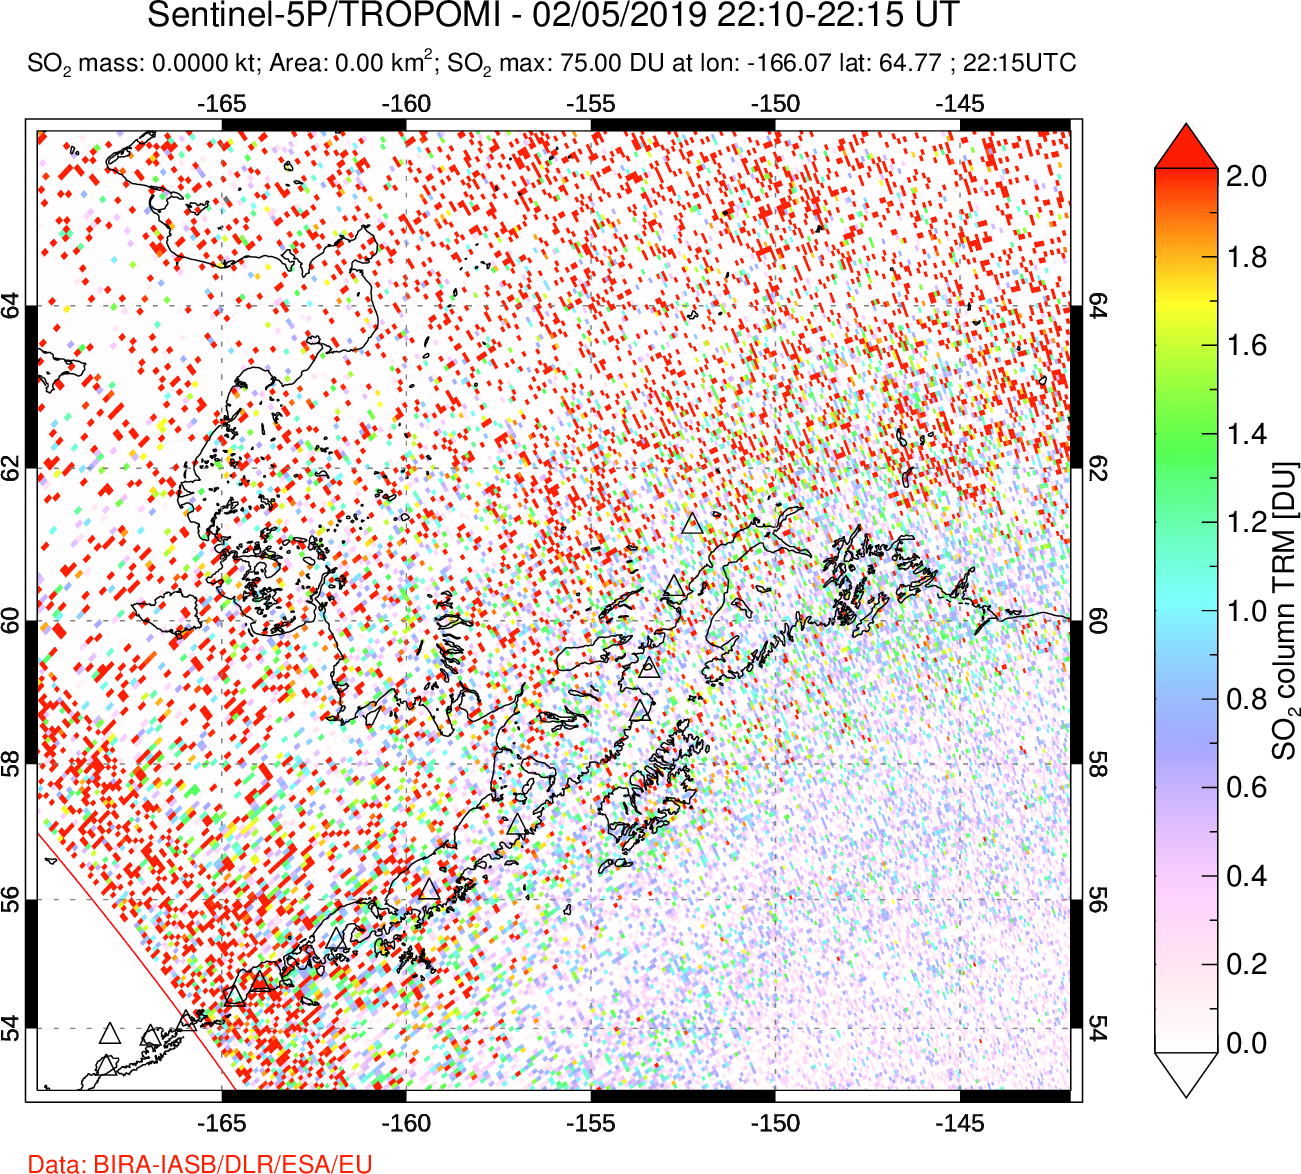 A sulfur dioxide image over Alaska, USA on Feb 05, 2019.